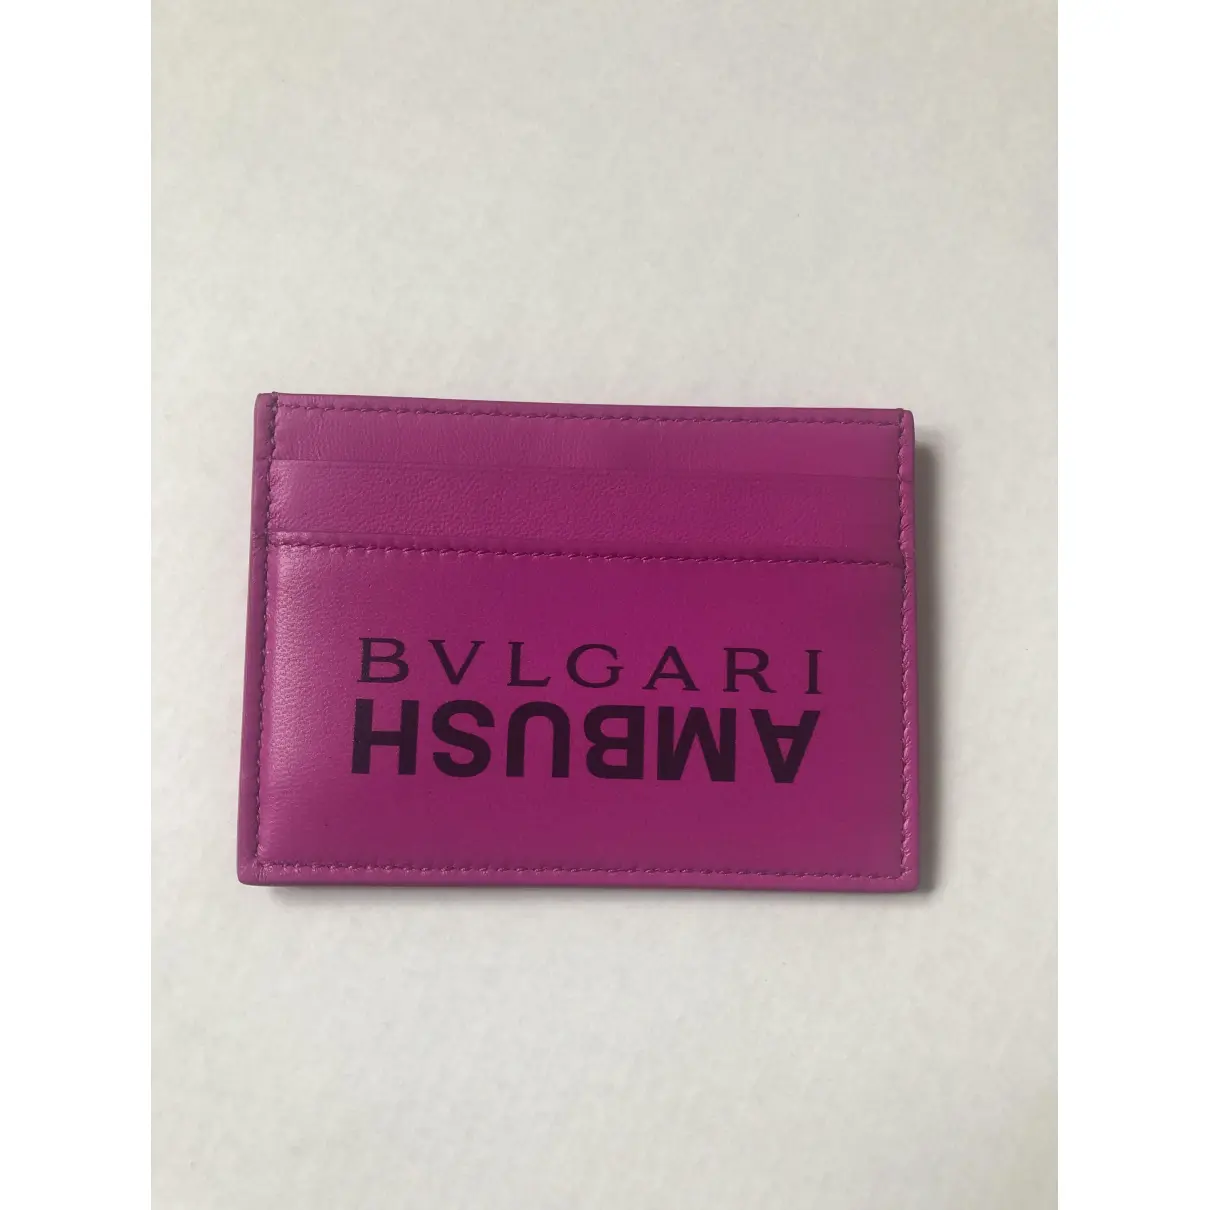 Buy Bvlgari Wallet online